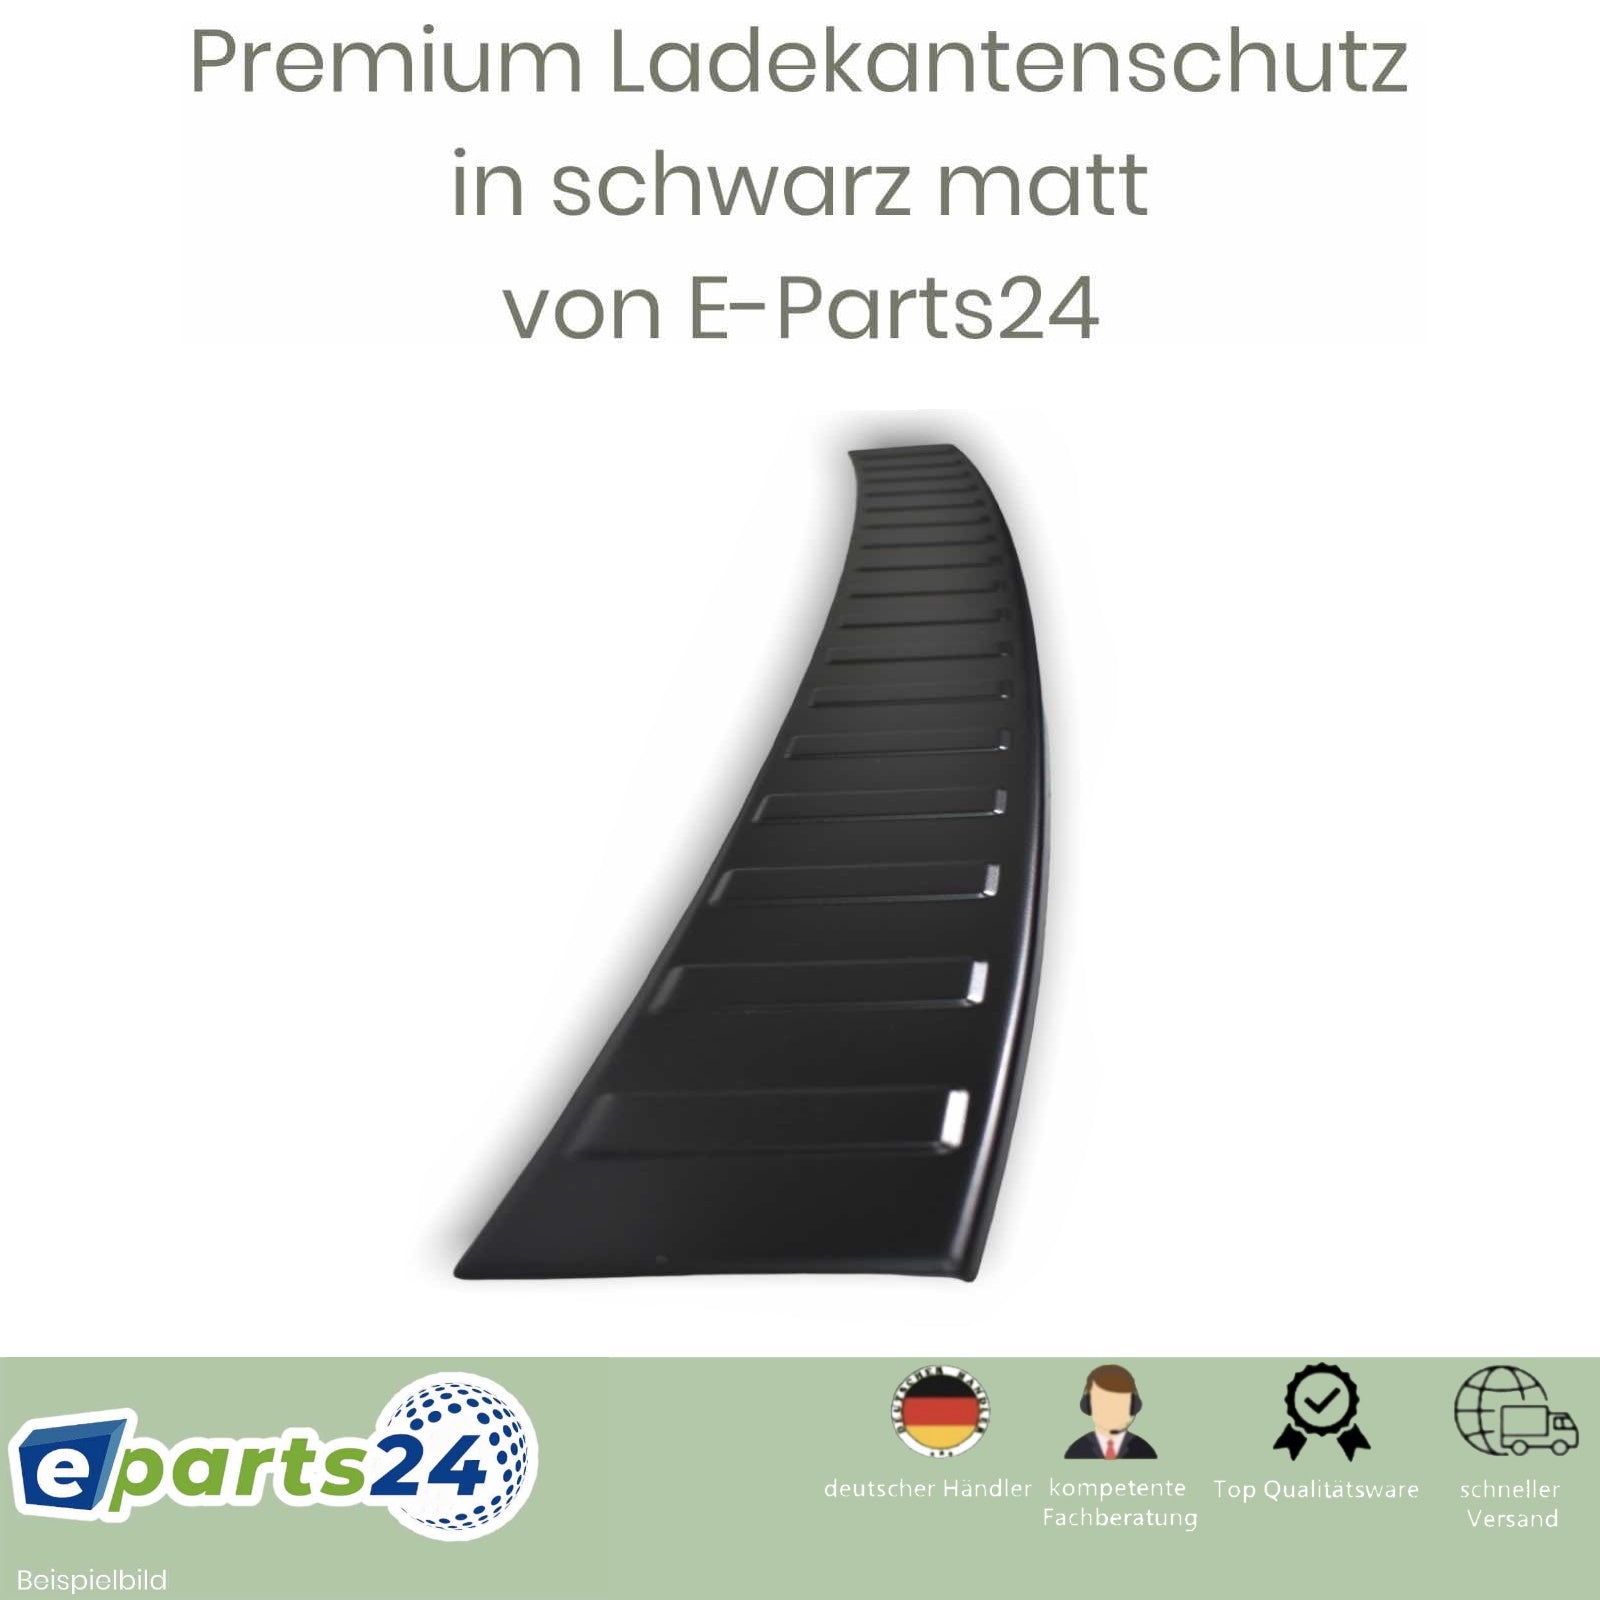 Ladekantenschutz Heckschutz für 2021 ab sch – Sportage E-Parts24 NQ5 Edelstahl KIA